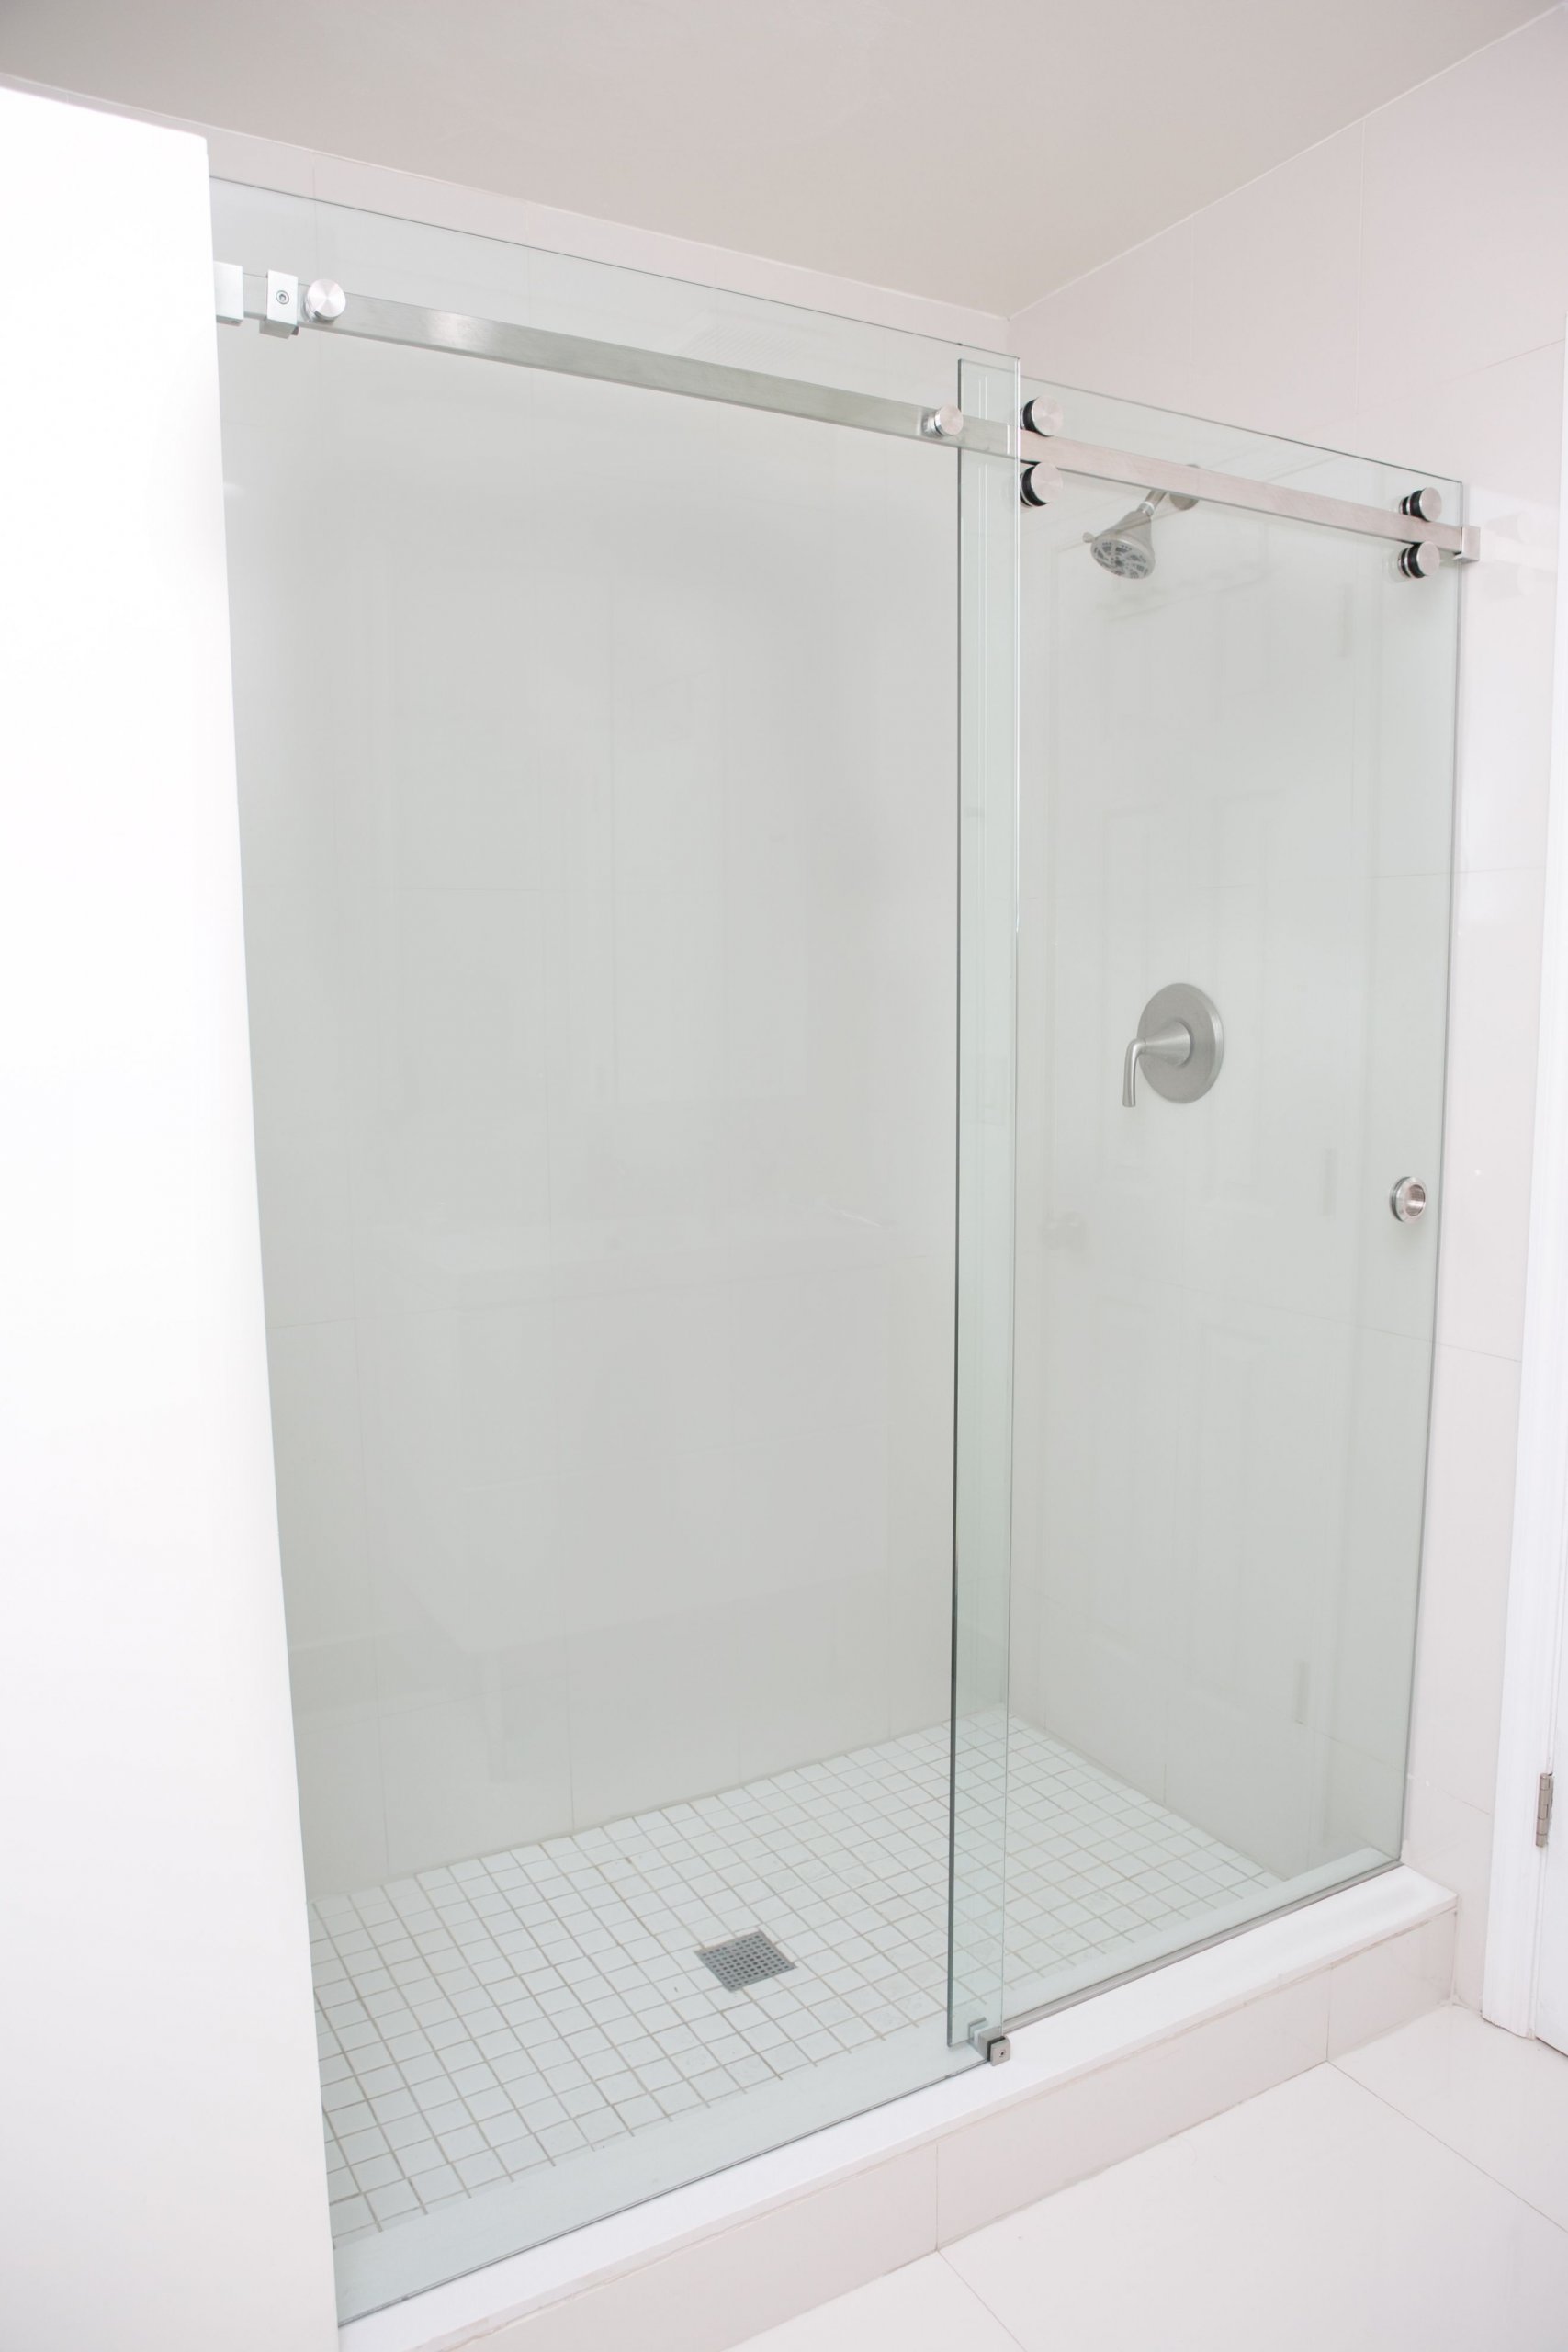 Types of Sliding Glass Shower Doors